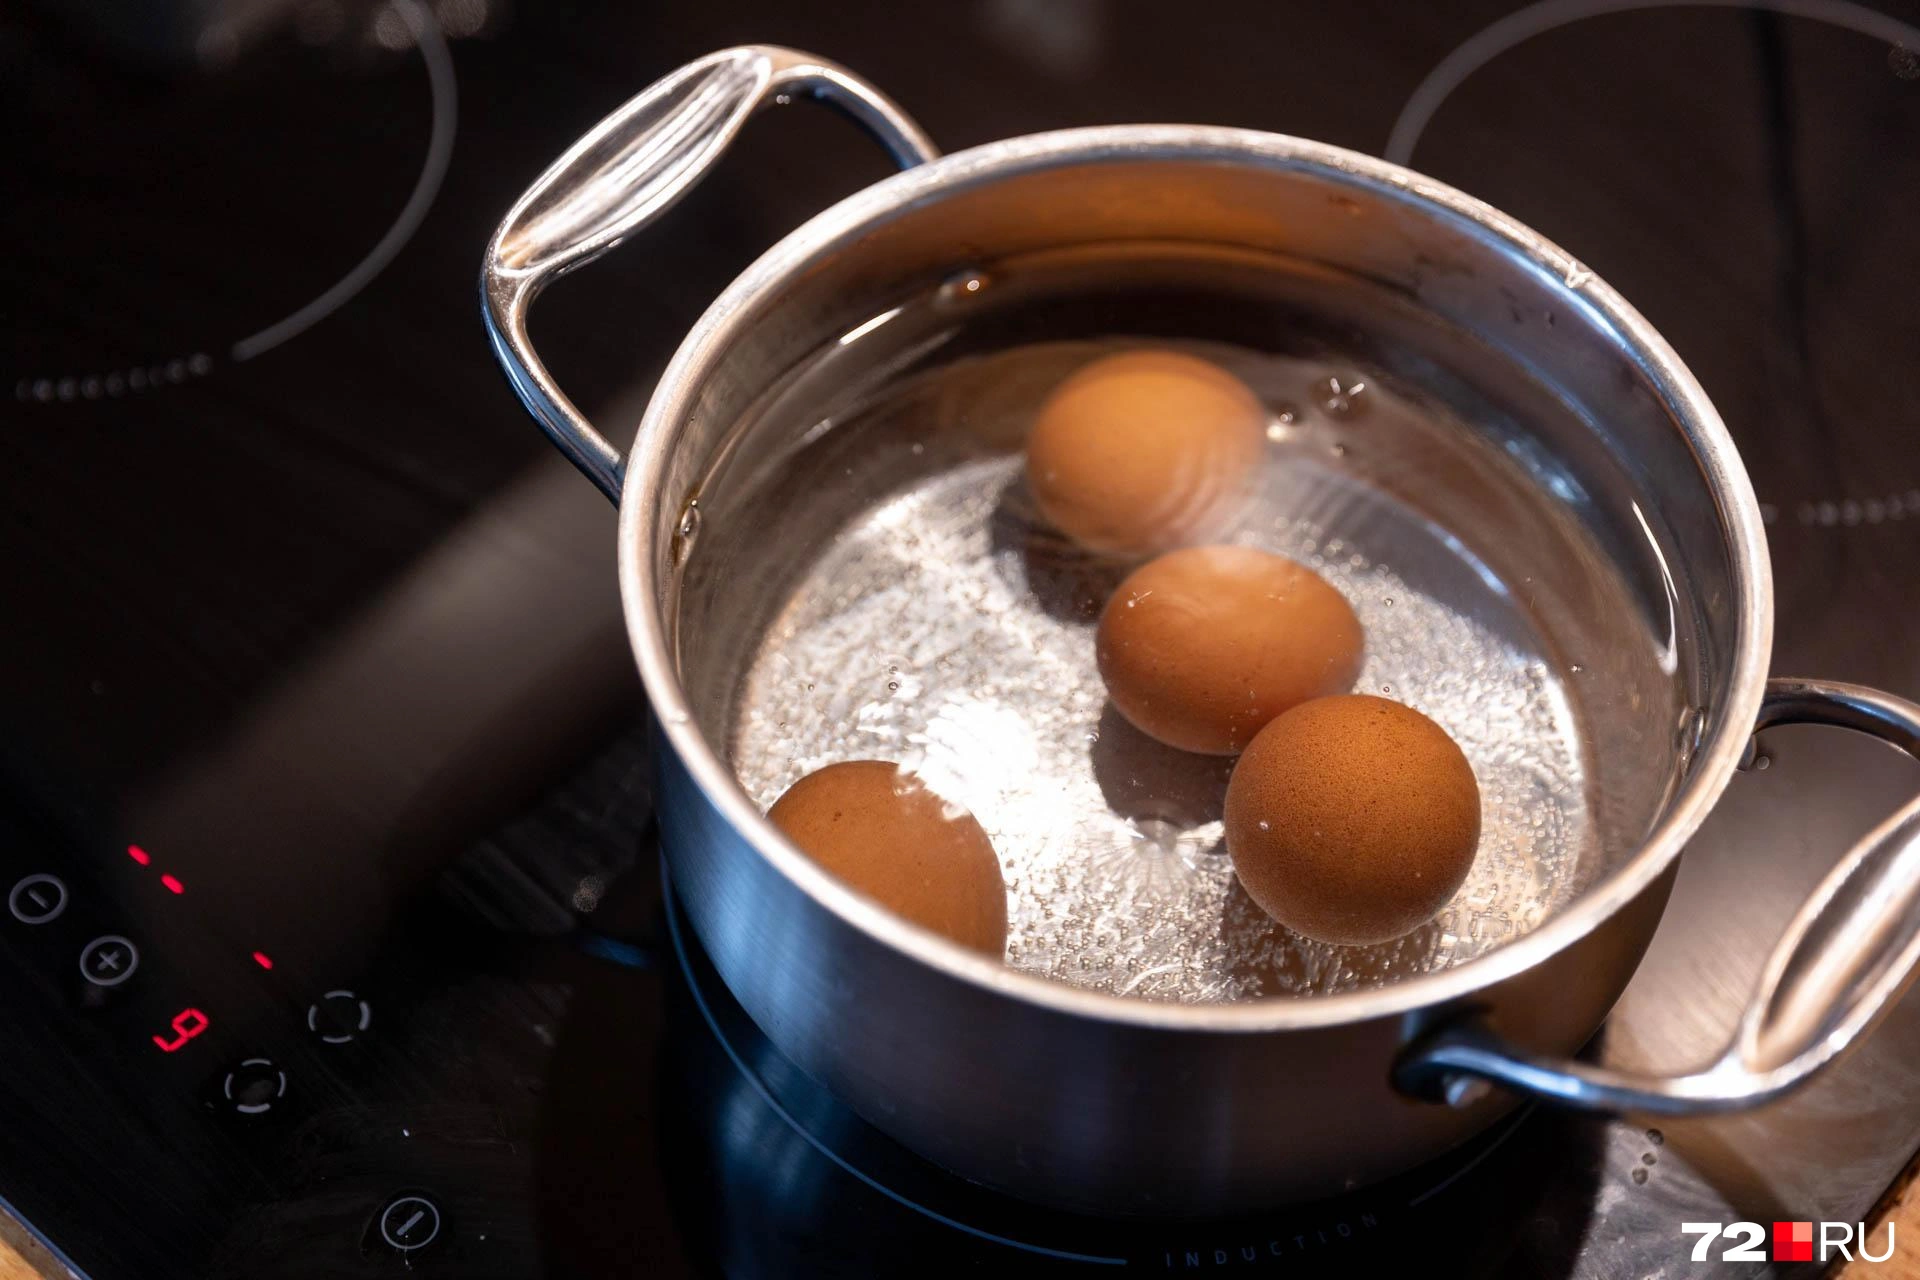 Правильно сваренное яйцо можно легко испортить неумелой очисткой. Вот несколько советов, чтобы подать к столу красивые ровные яйца